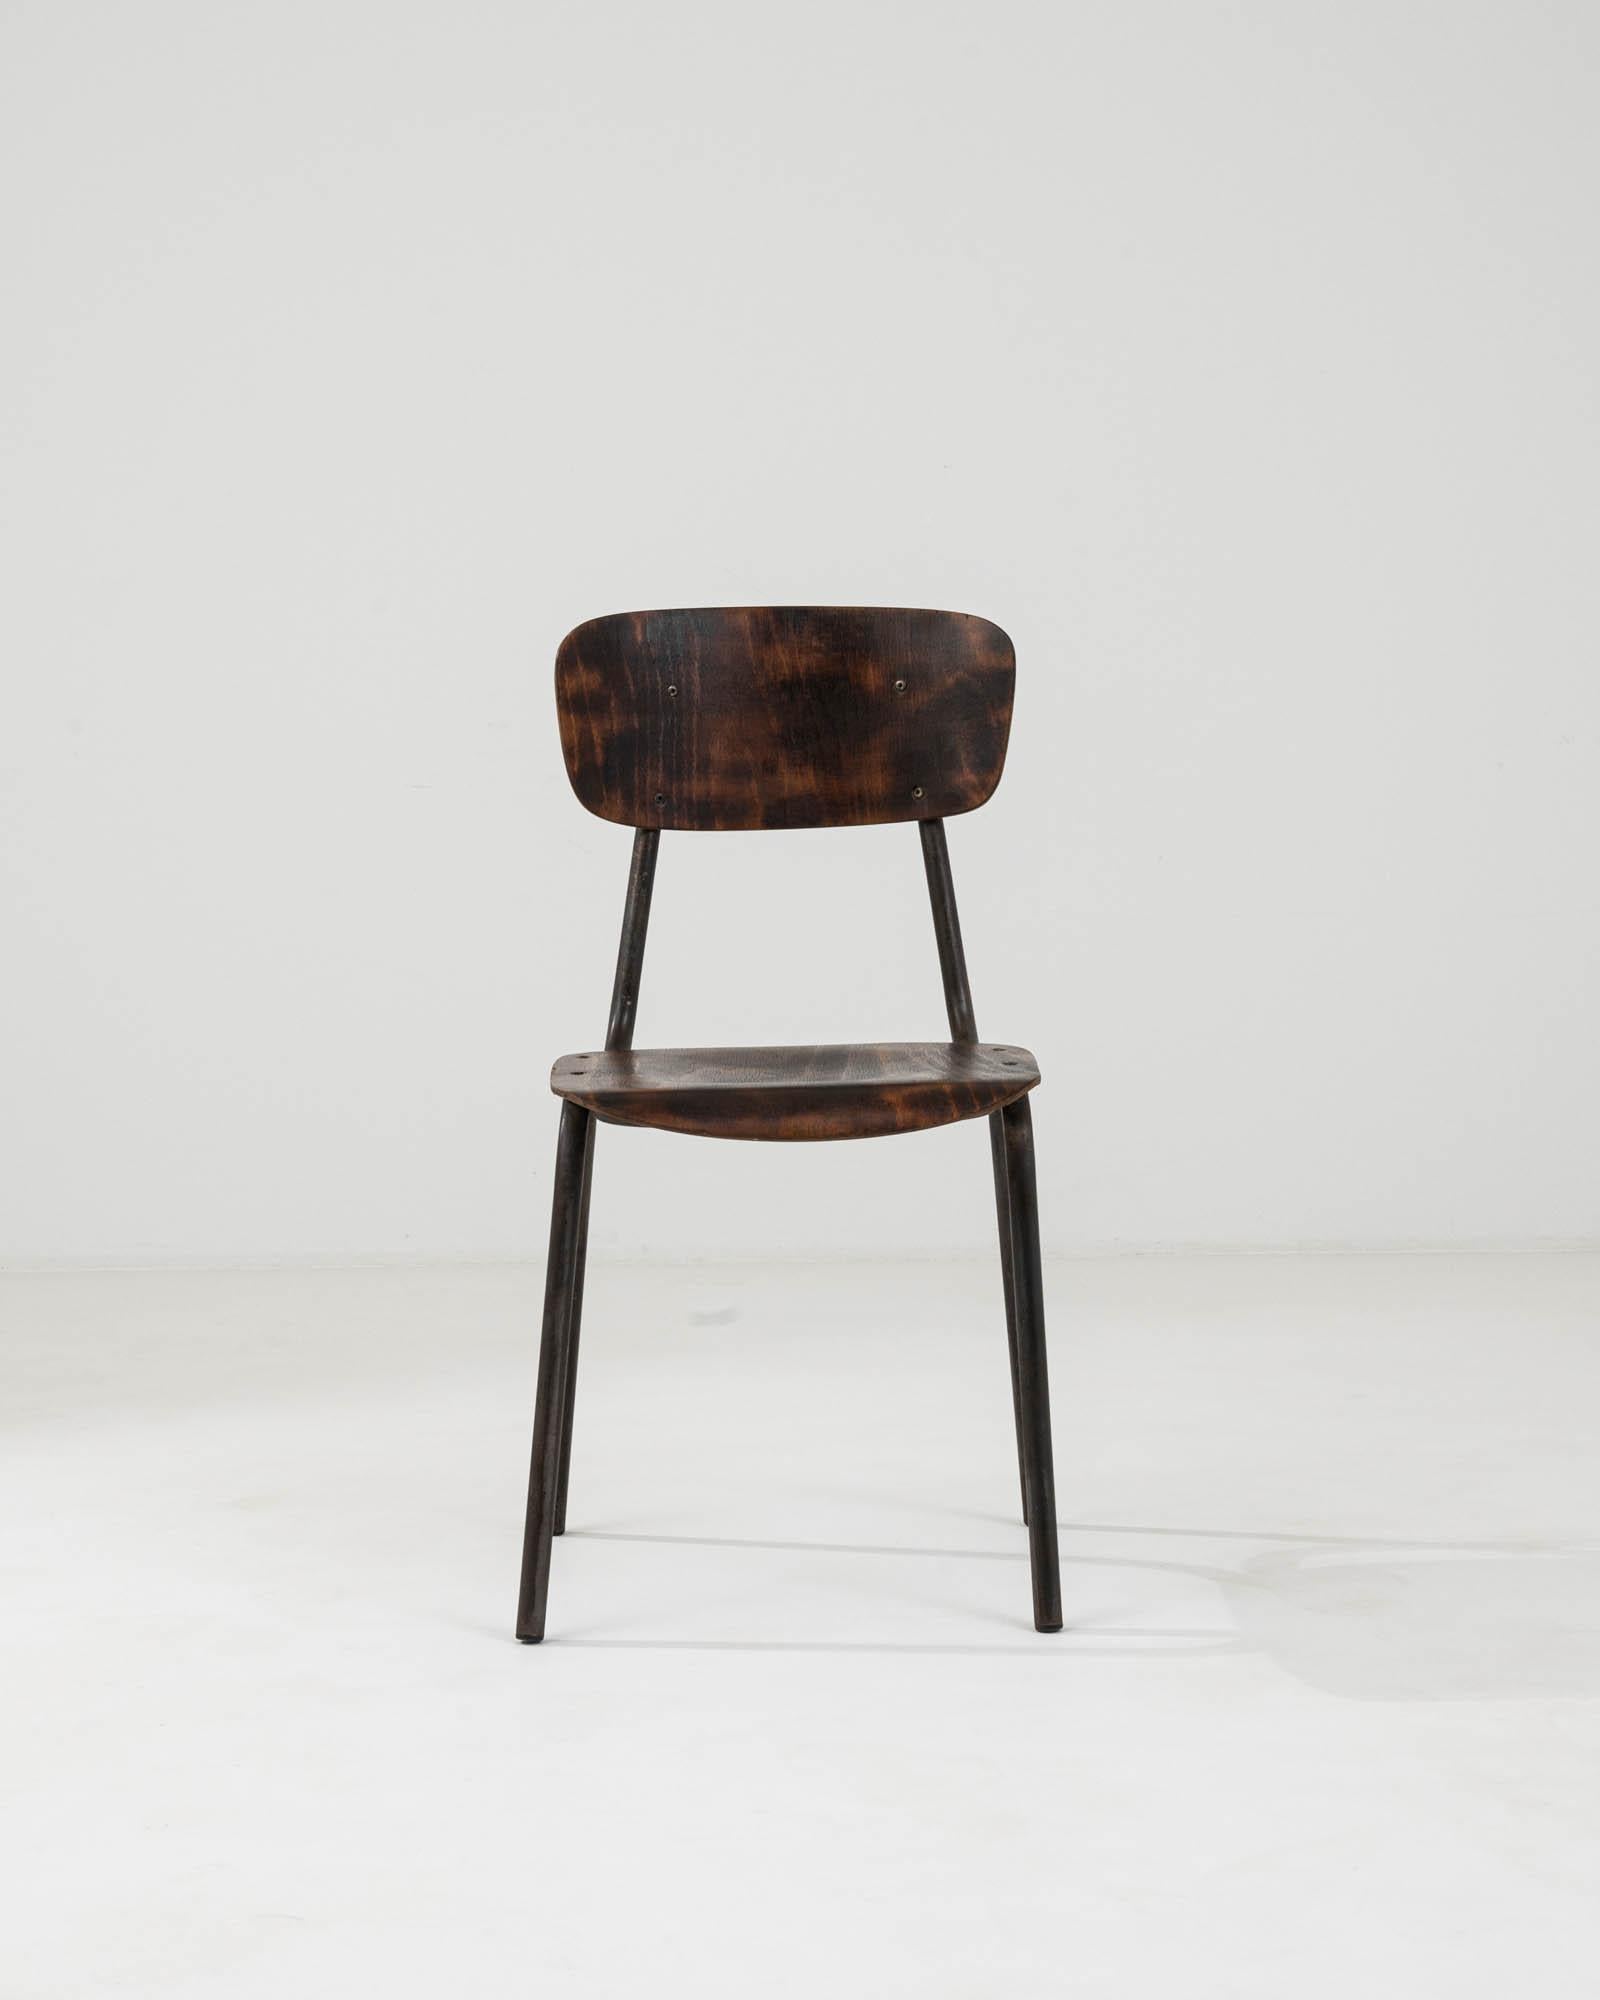 Entrez dans un monde où le design classique rencontre une fonction durable avec cette chaise en métal et bois d'Europe centrale du XXe siècle. Cette pièce singulière illustre l'art de l'artisanat intemporel, avec une structure métallique élégante